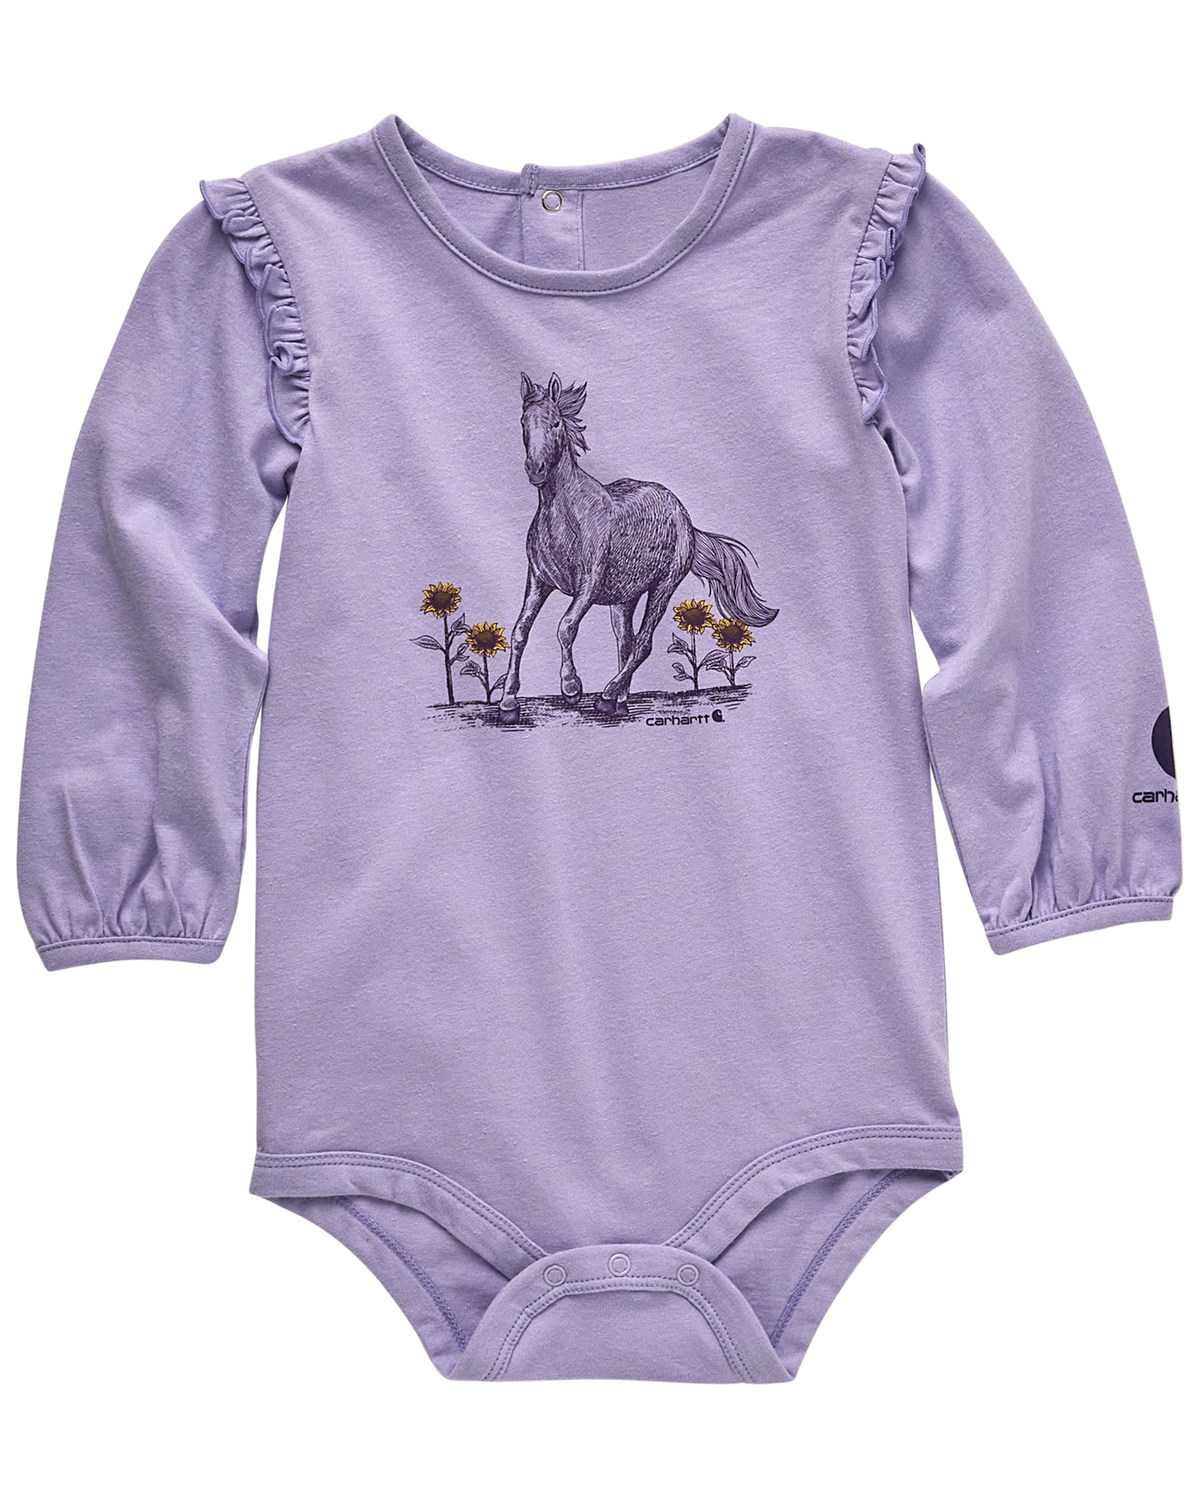 Carhartt Infant Girls' Horse Long Sleeve Onesie